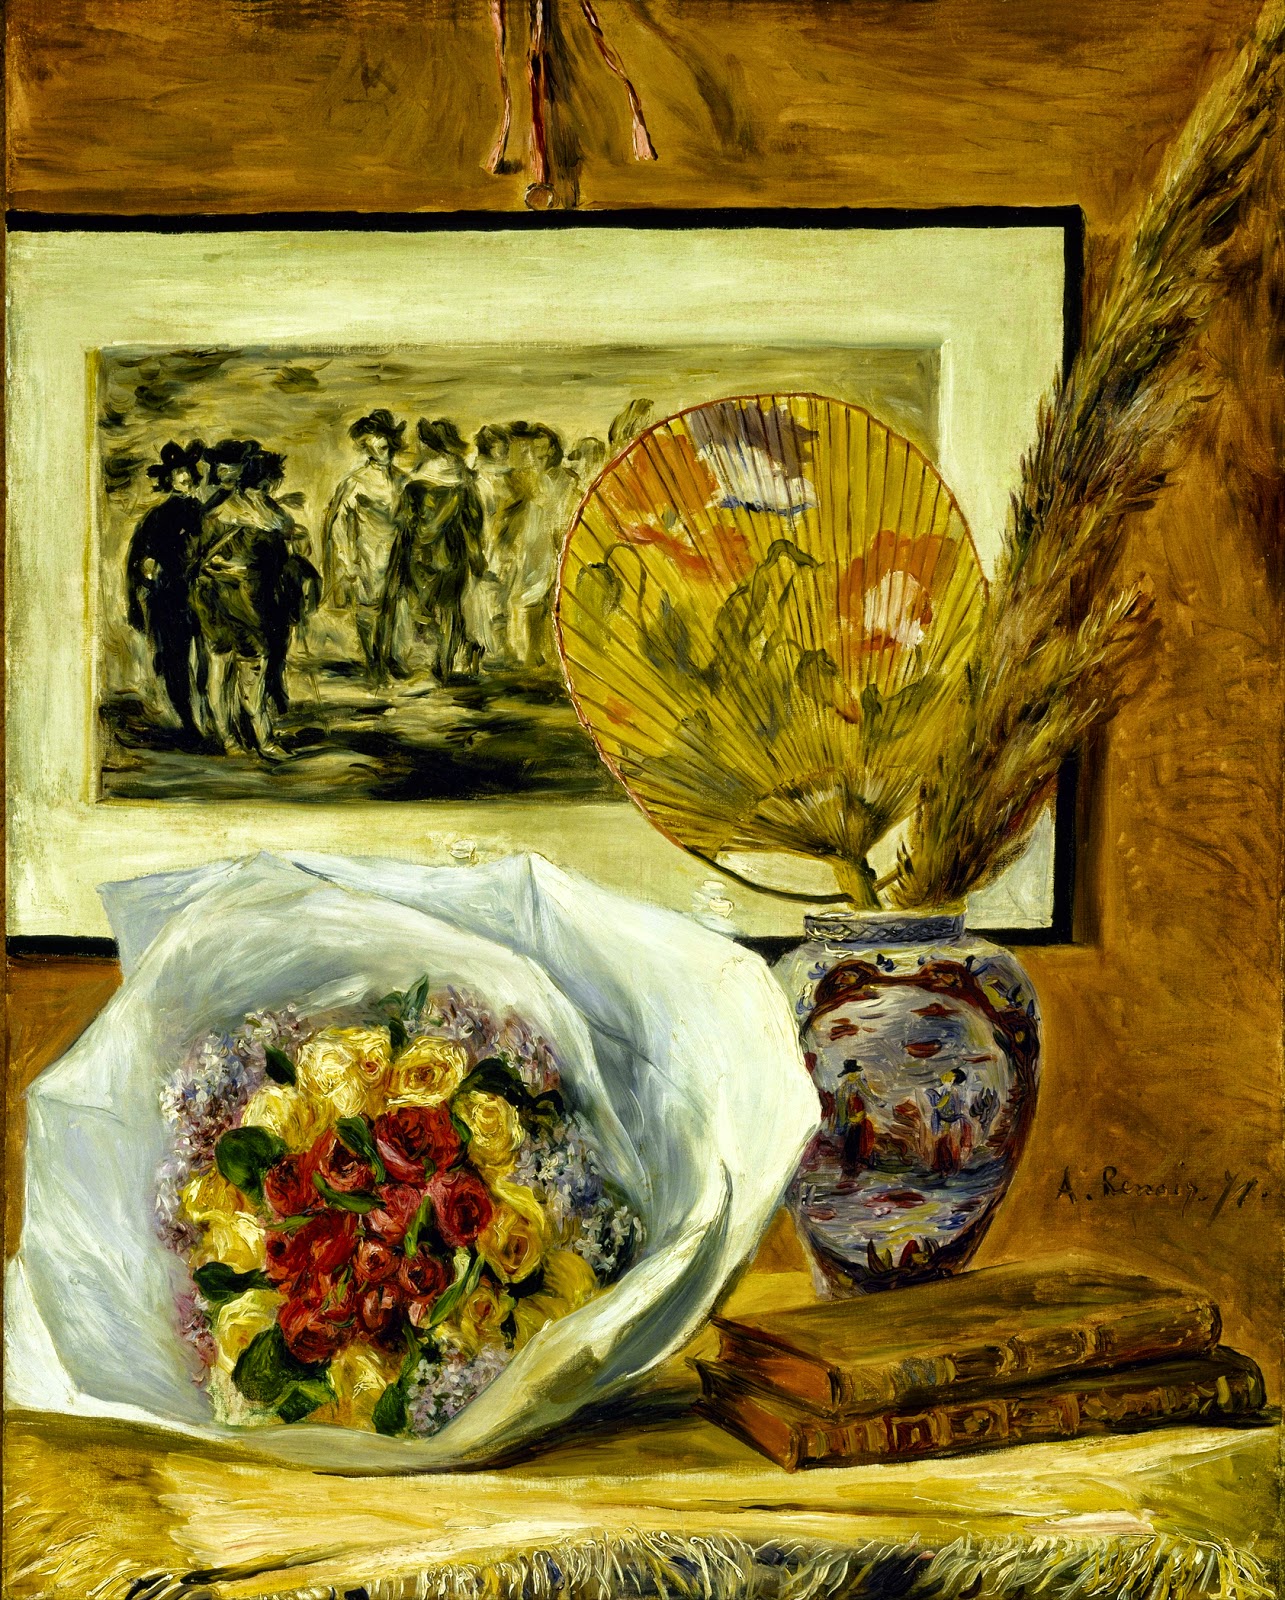 Pierre+Auguste+Renoir-1841-1-19 (300).jpg